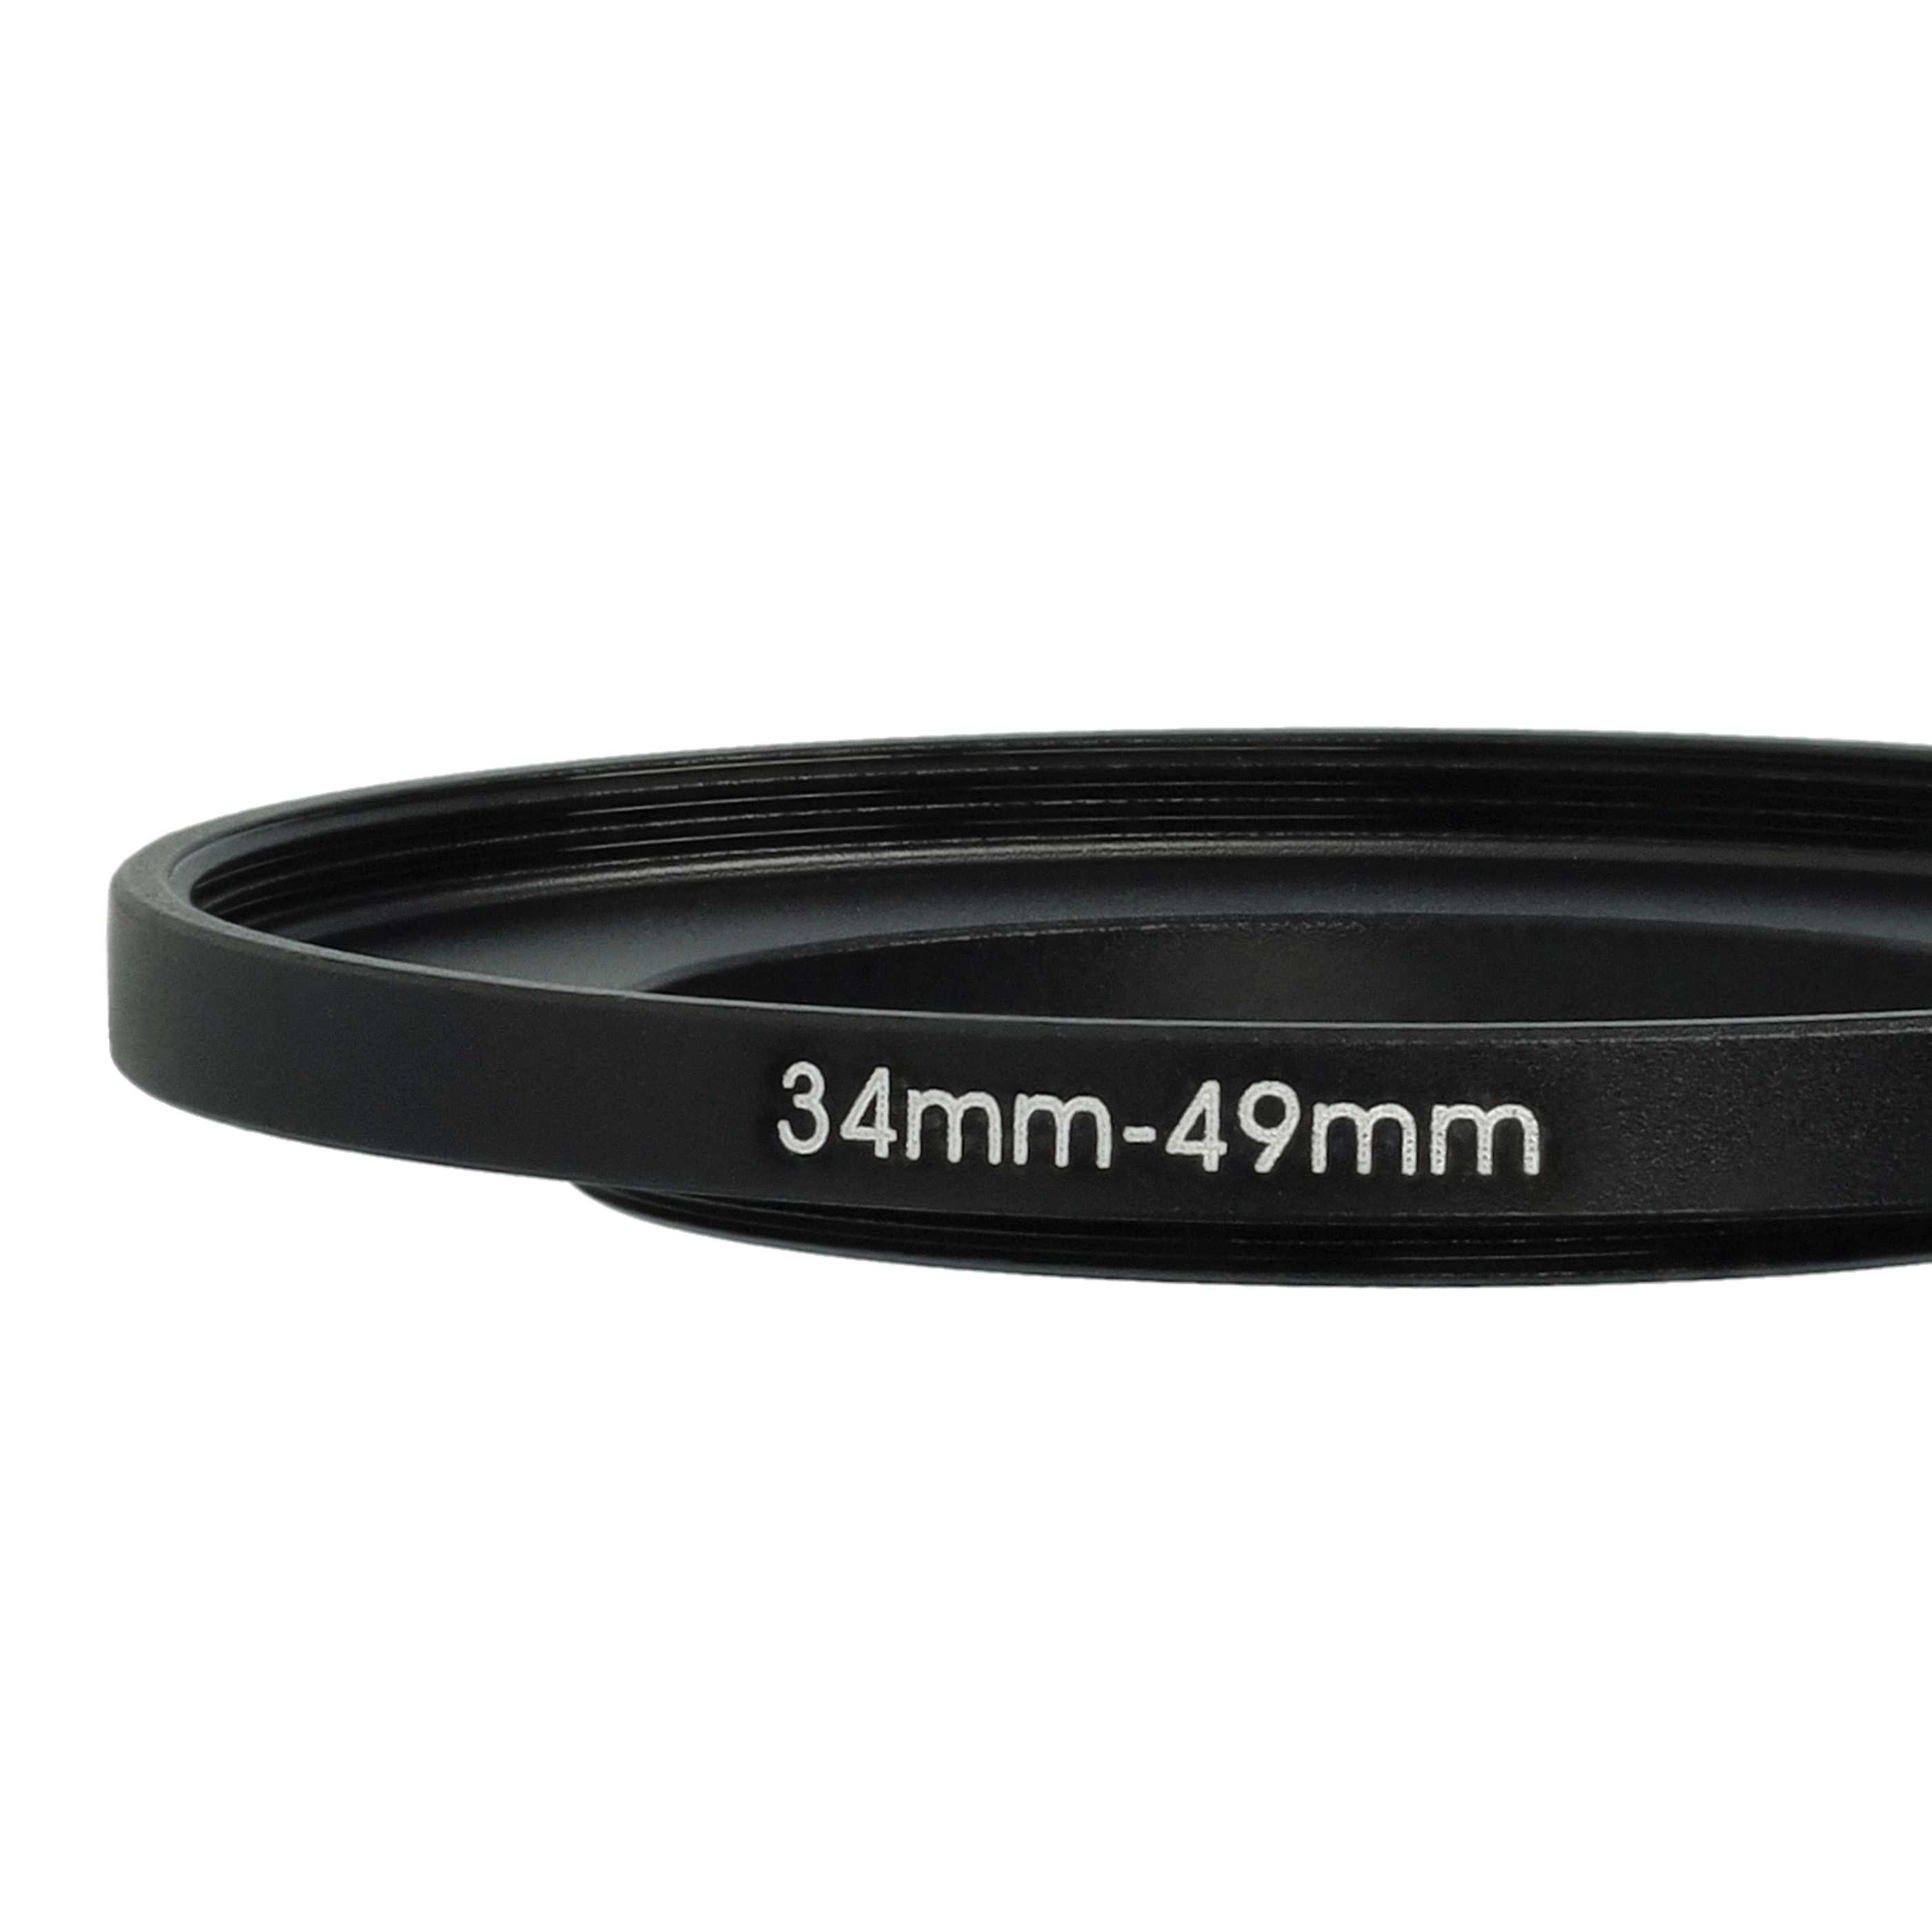 Bague Step-up 34 mm vers 49 mm pour divers objectifs d'appareil photo - Adaptateur filtre